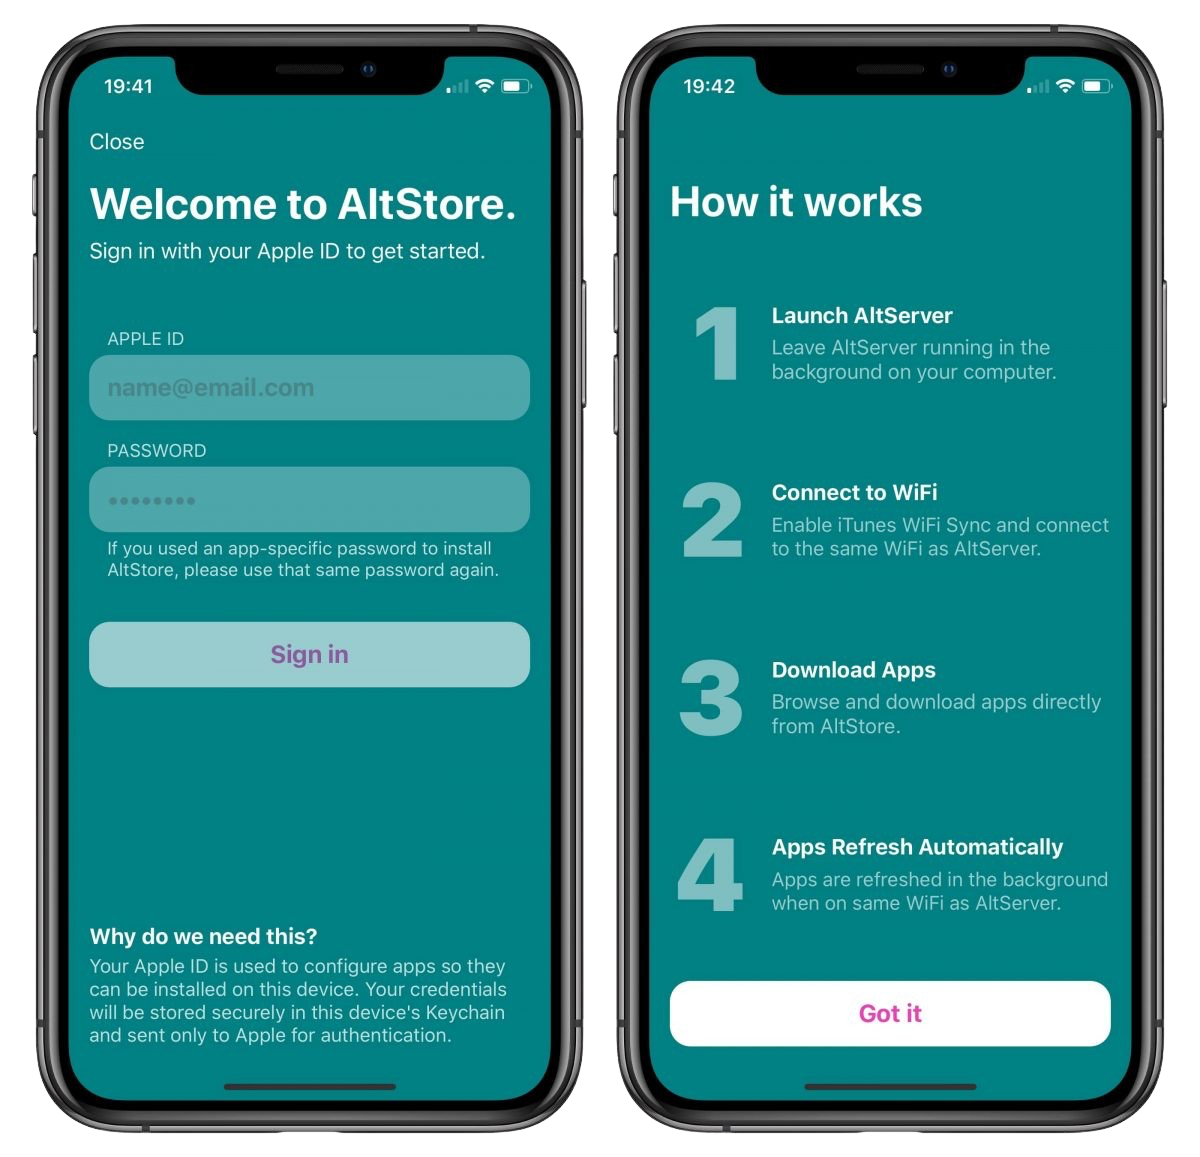 Launch Altstore app to begin downloading applications